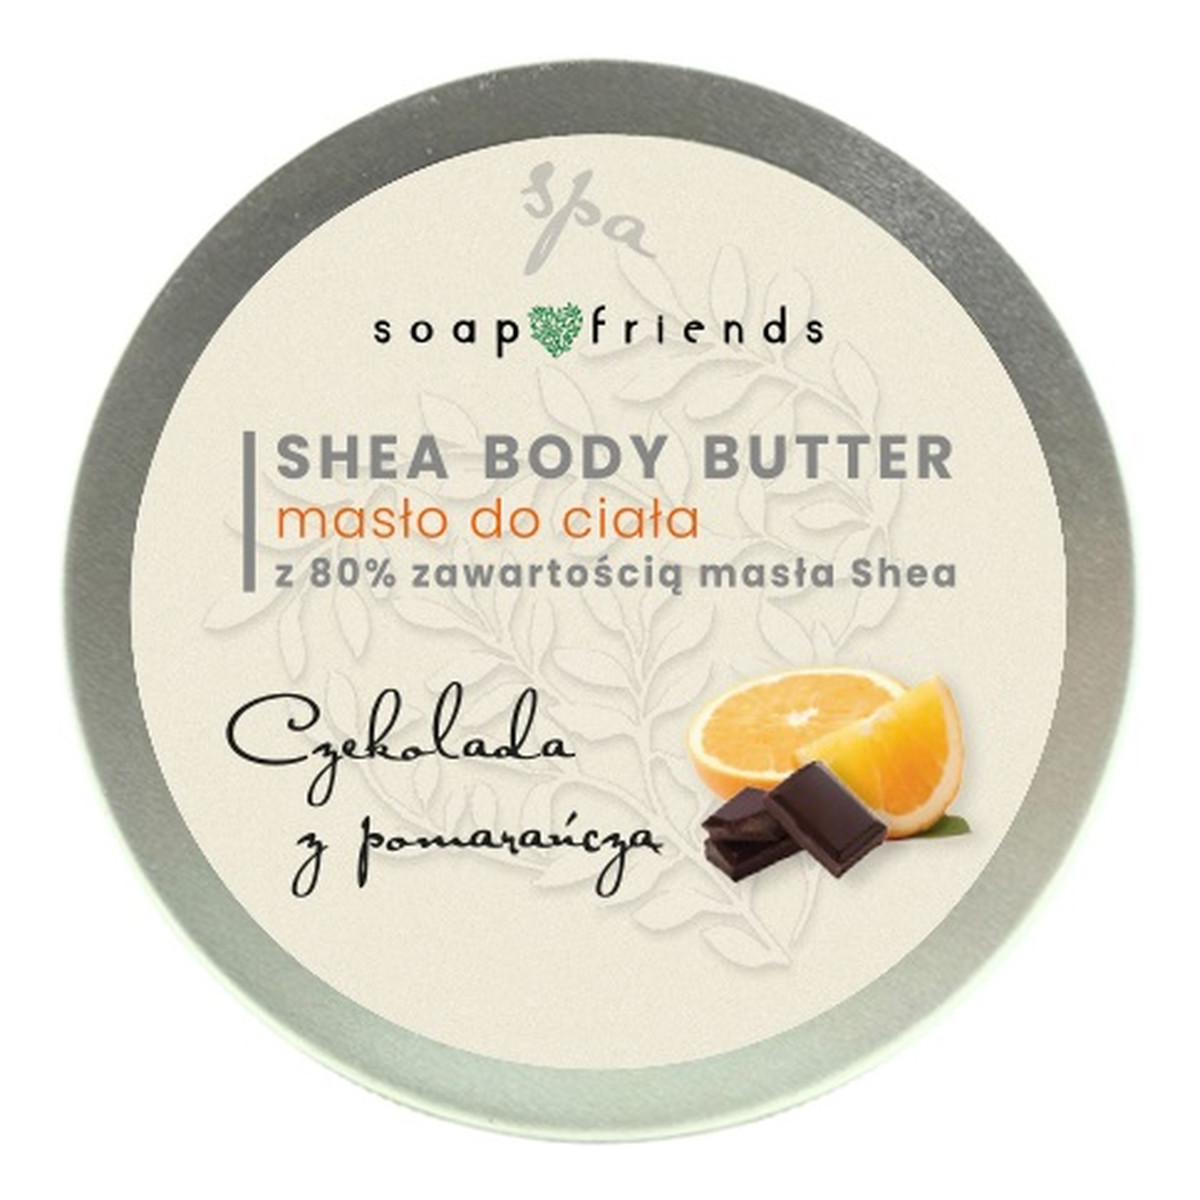 The Secret Soap Store Shea butter 80% masło do ciała czekolada & pomarańcza 50ml